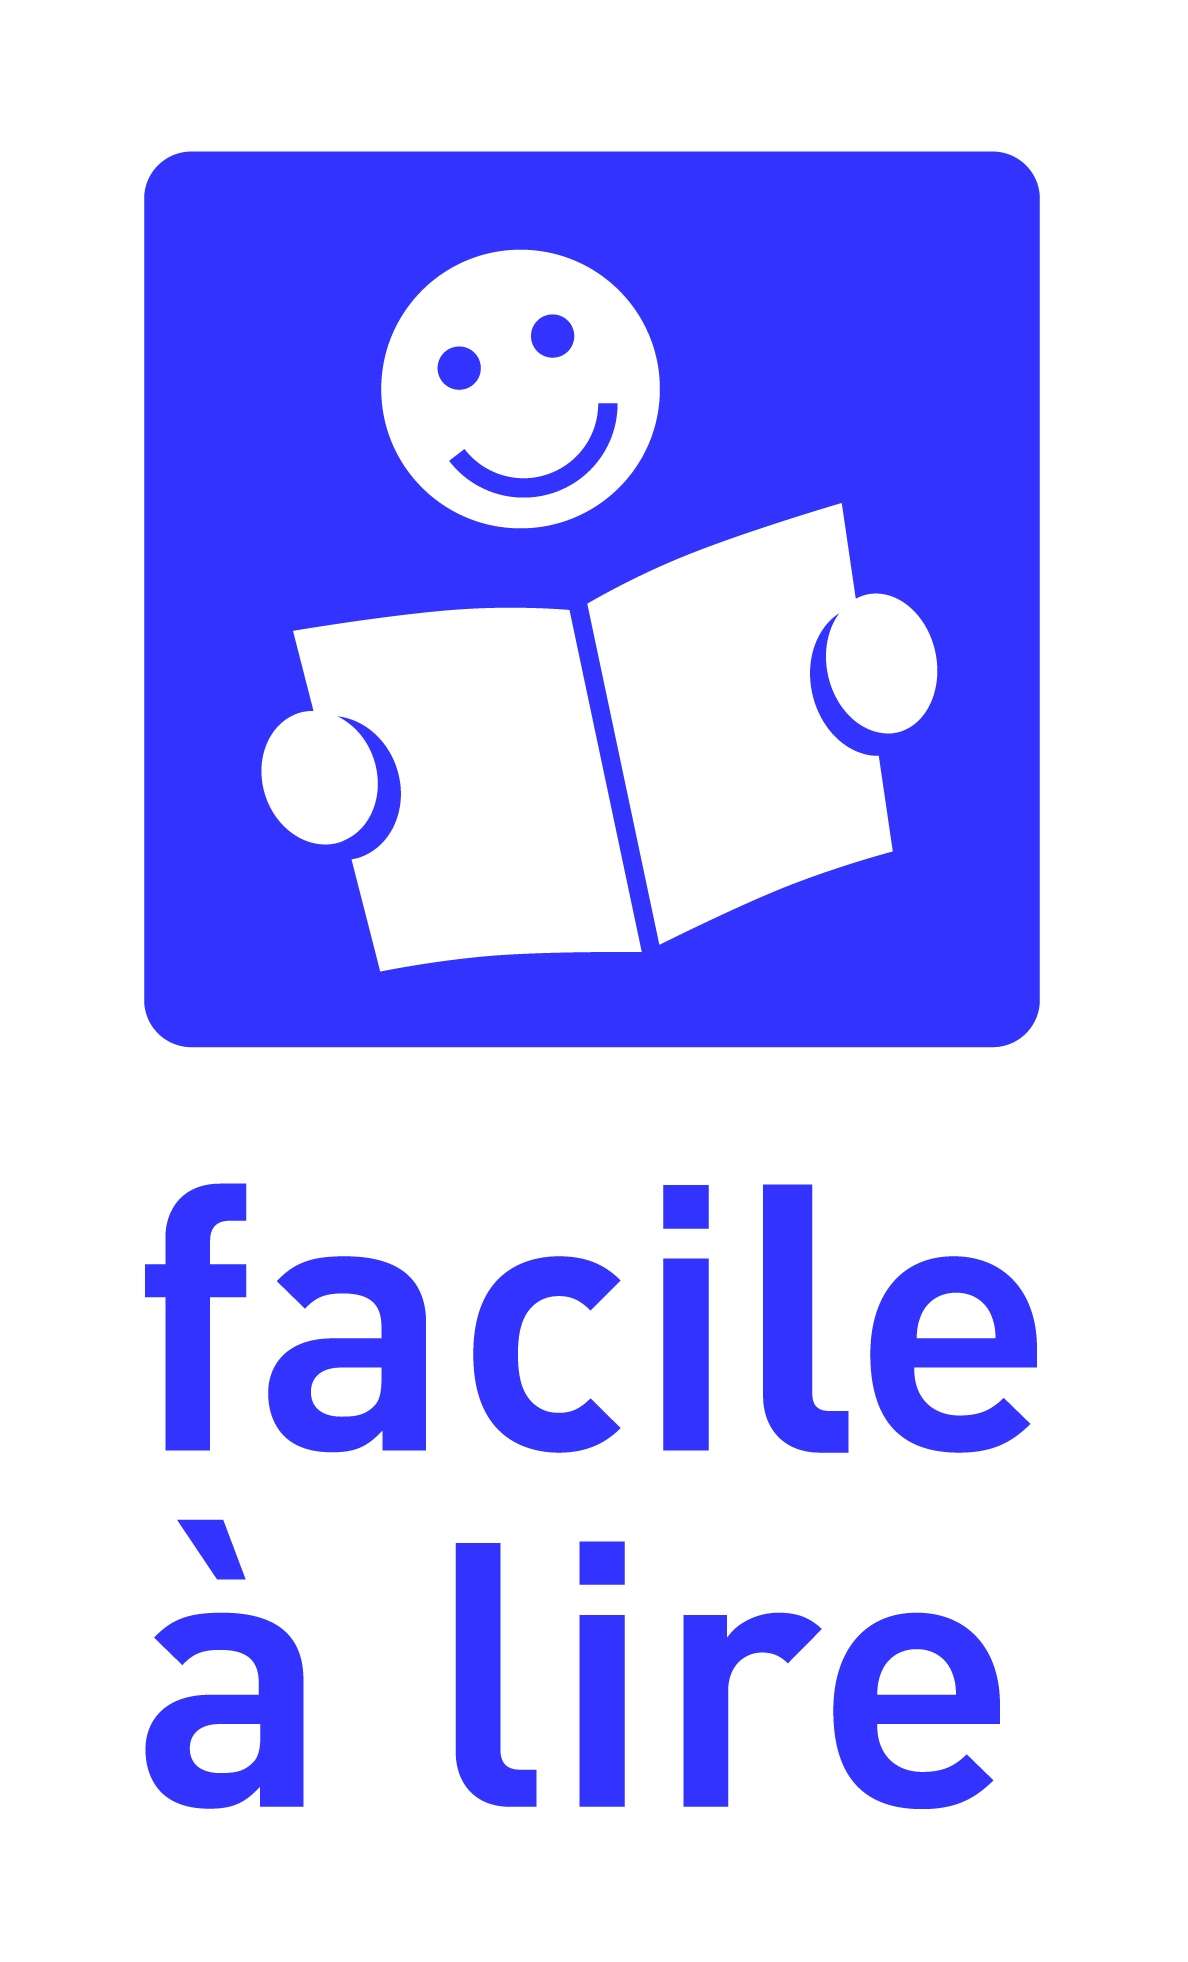 Logo du dispositif Facile à lire, qui consiste en un dessin schématique représentant une personne tenant un livre et souriant, au-dessus du texte "Facile à lire"